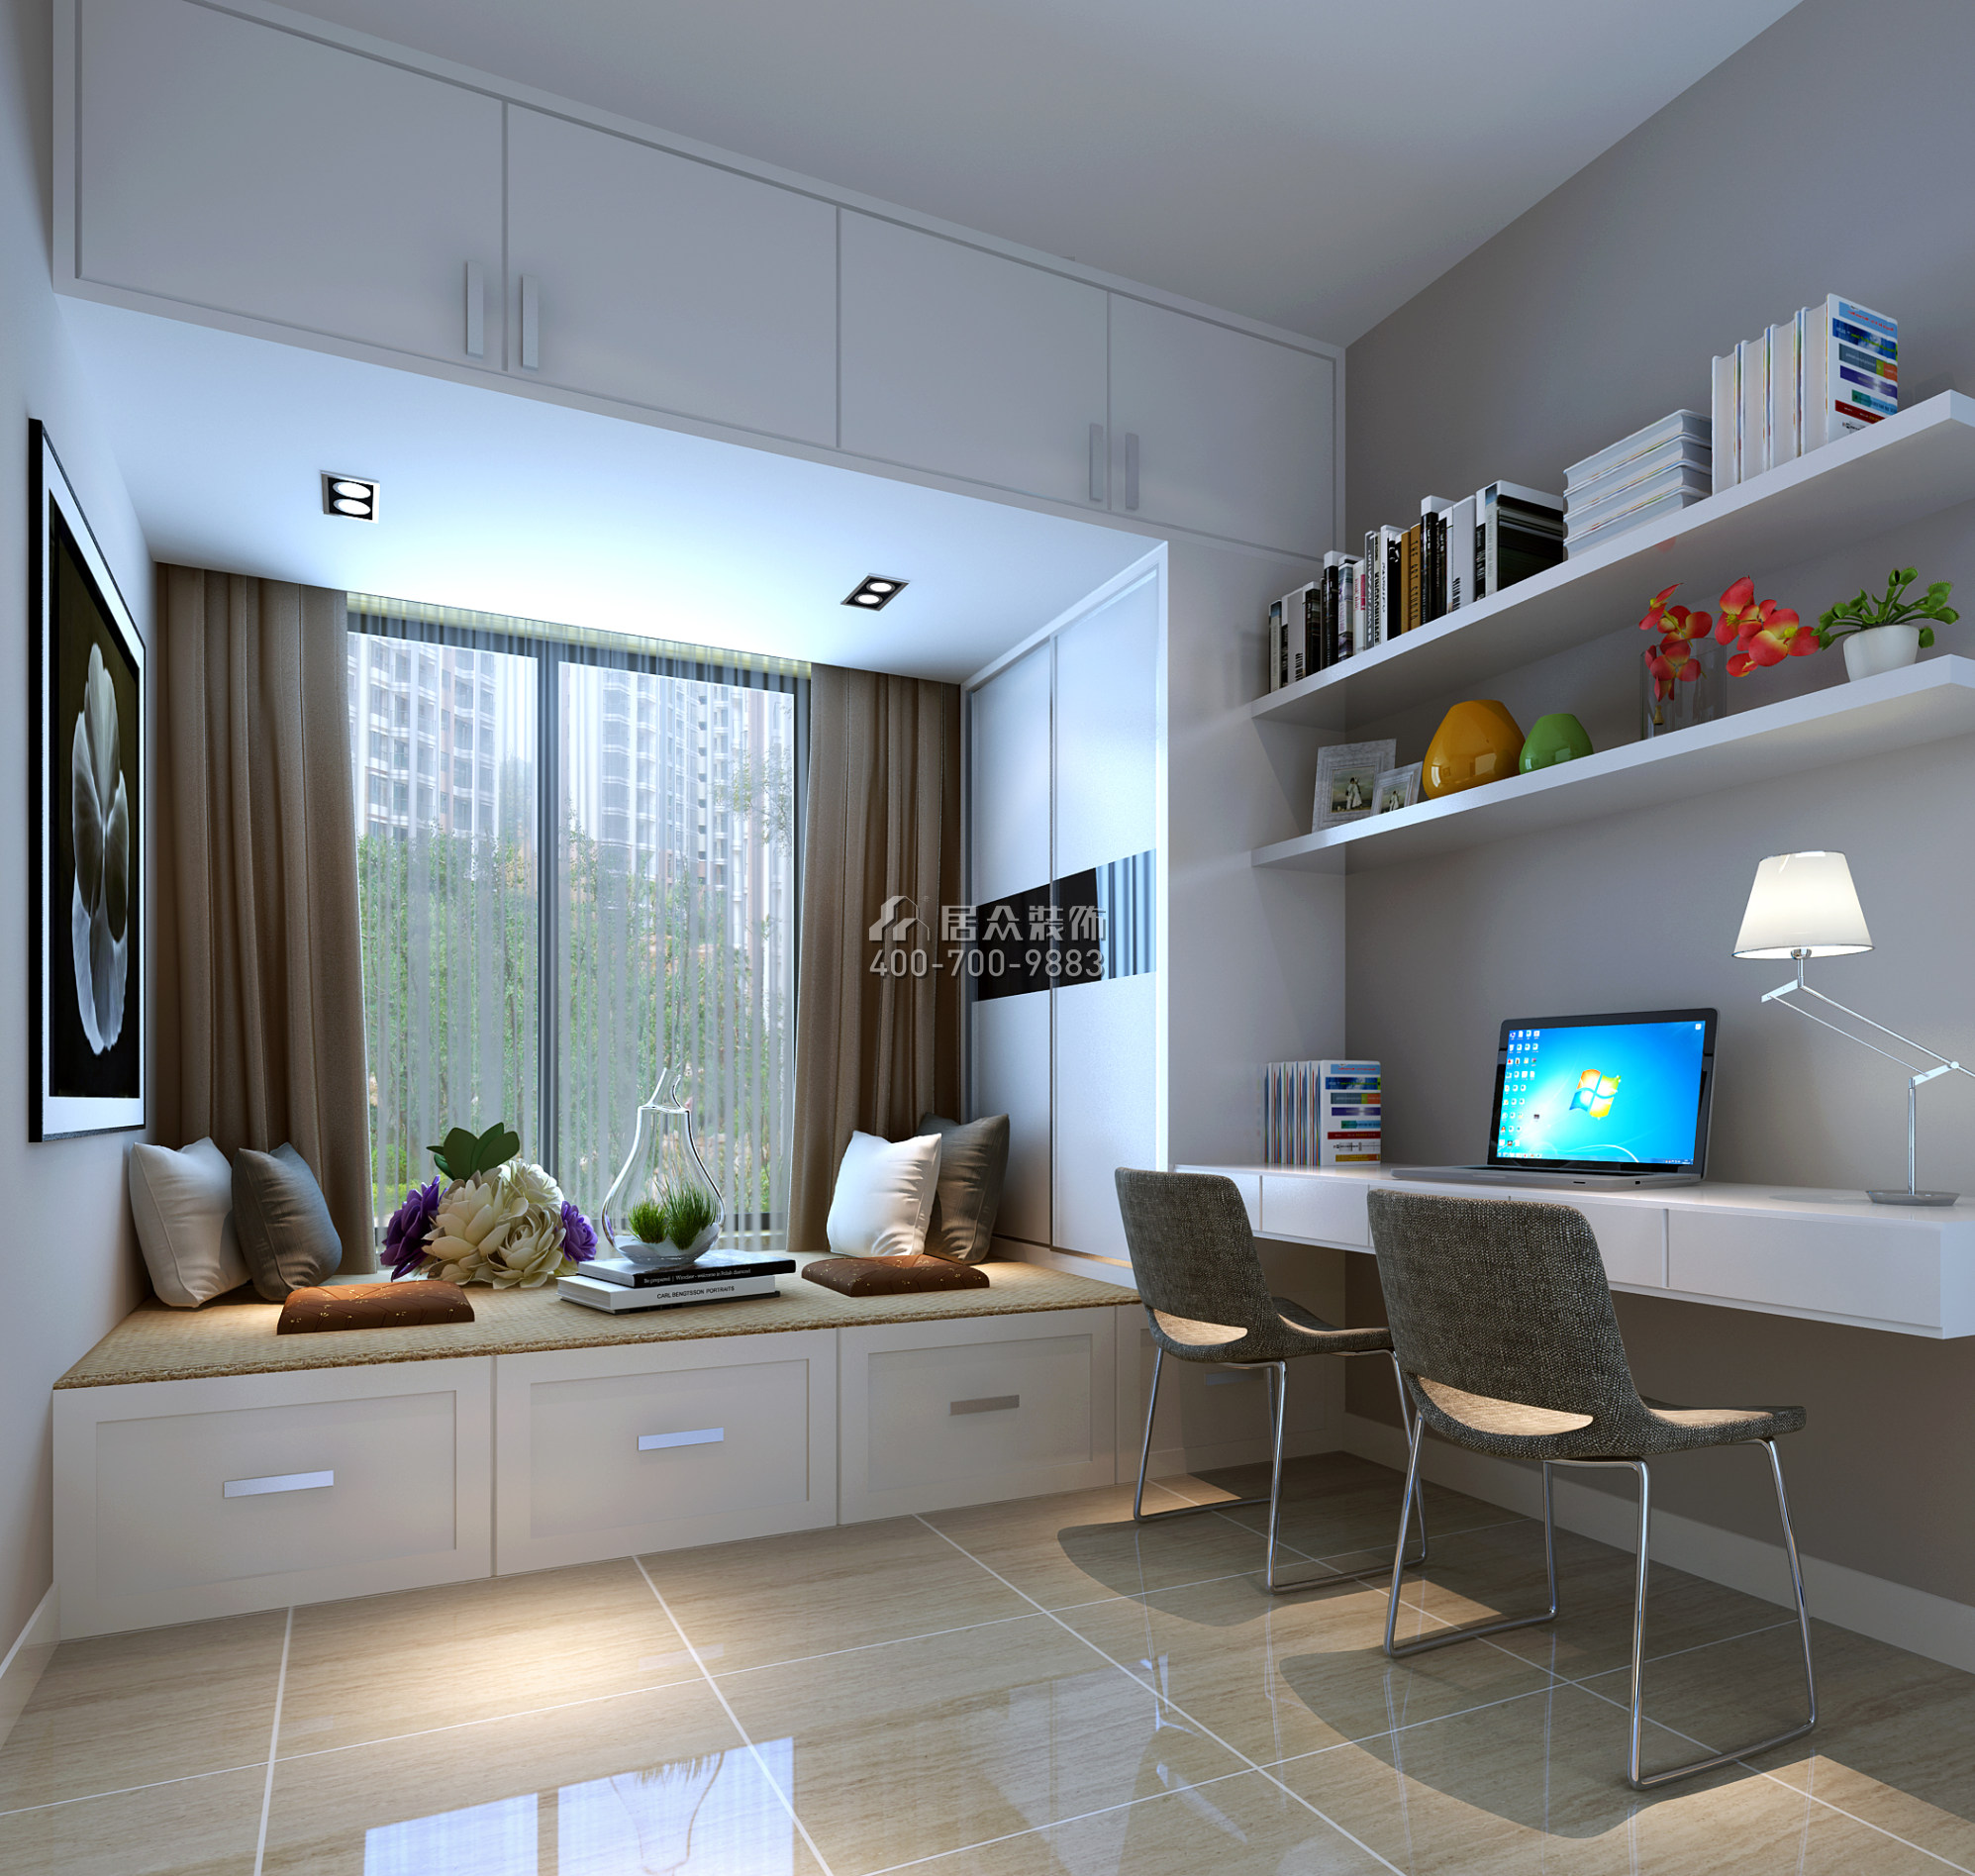 天匯城165平方米現代簡約風格平層戶型臥室書房一體裝修效果圖